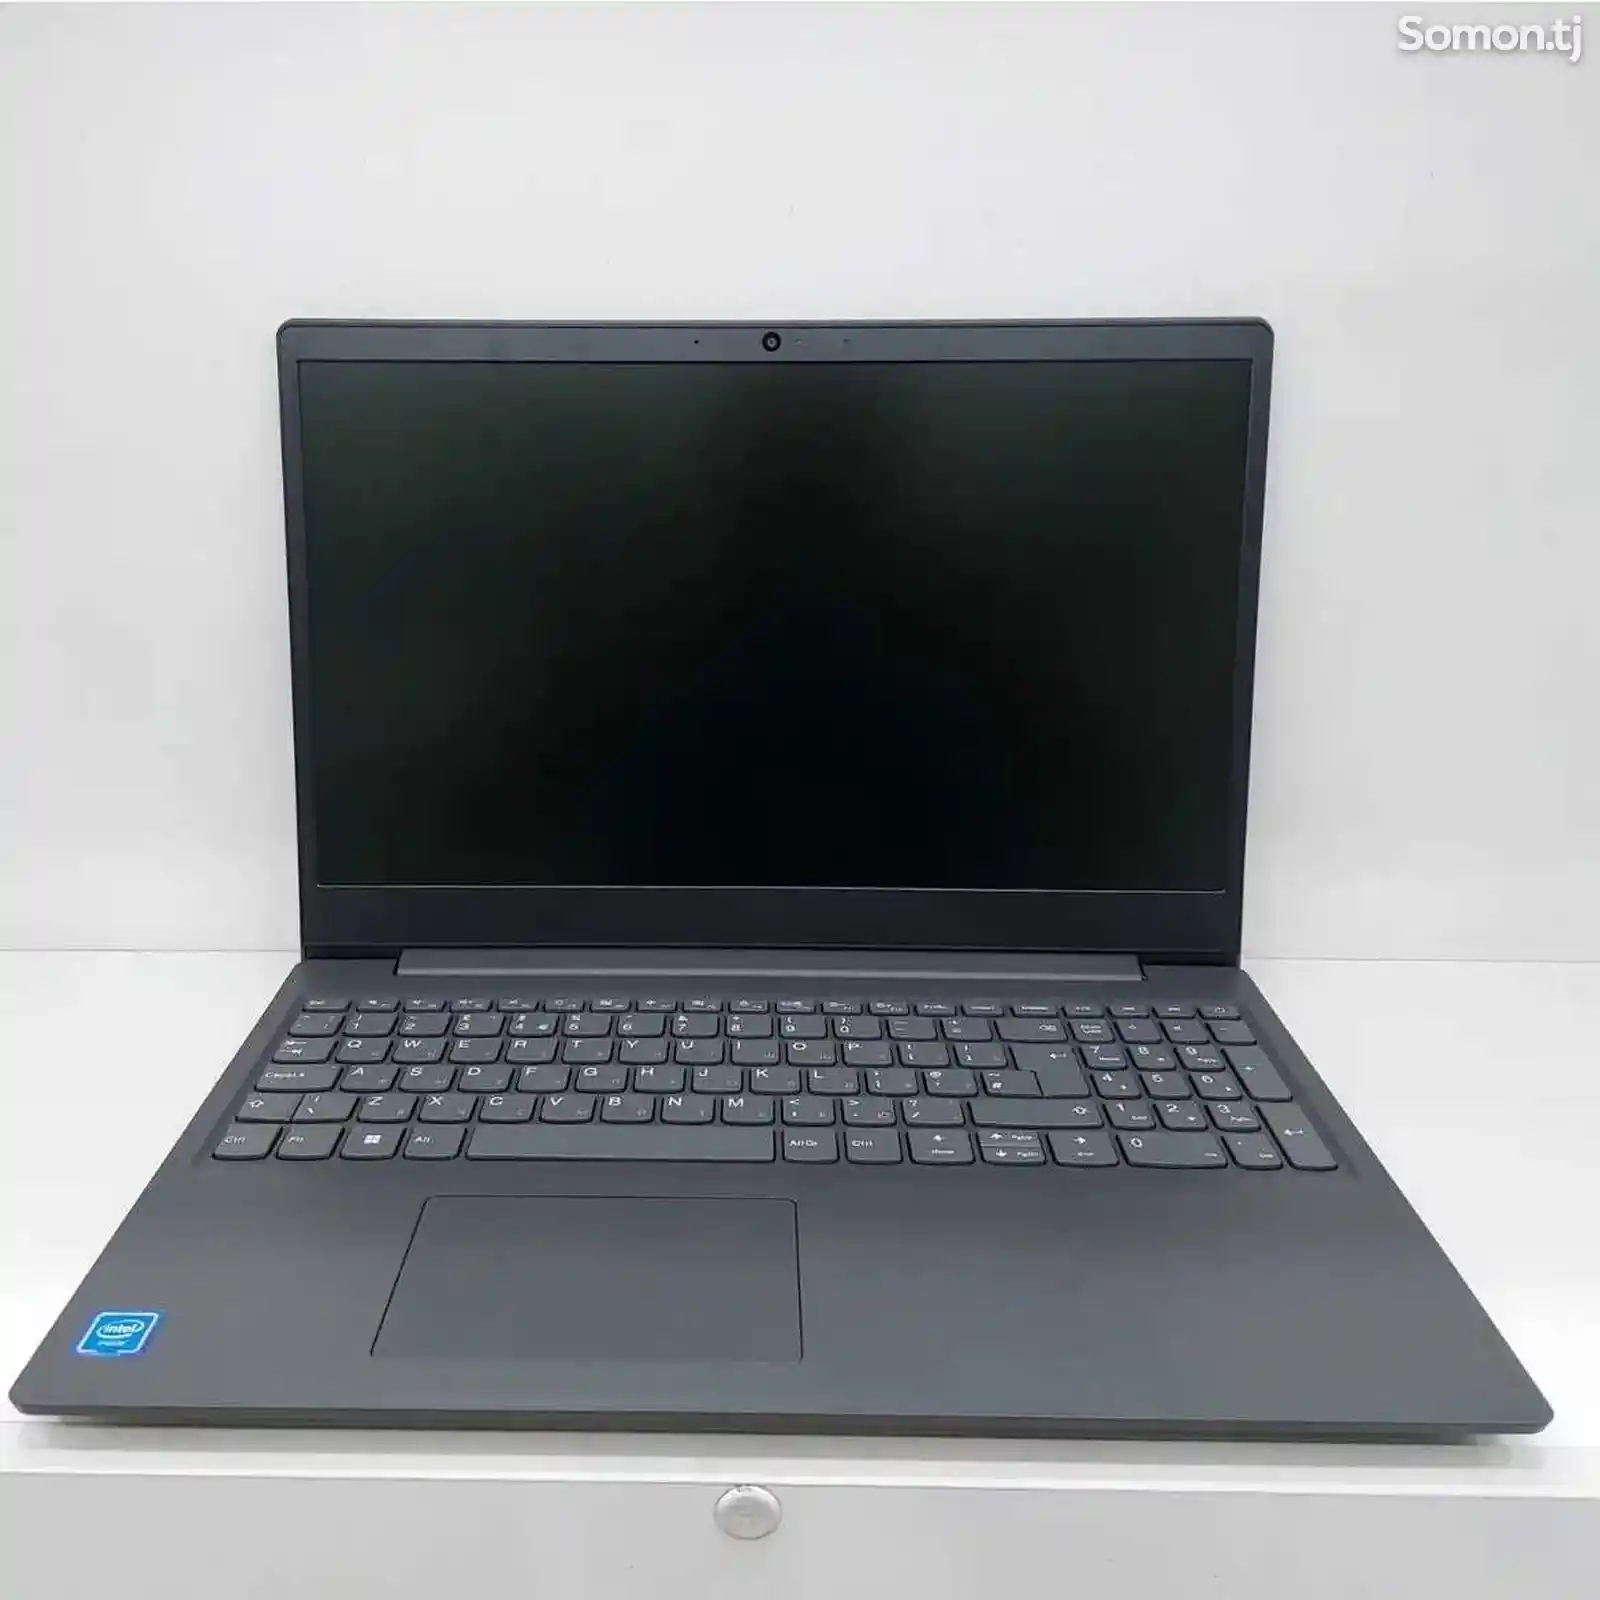 Ноутбук Lenovo V15 4GB 256GB SSD 2CELL intel N4020 чёрный цвет- ноутбук-1